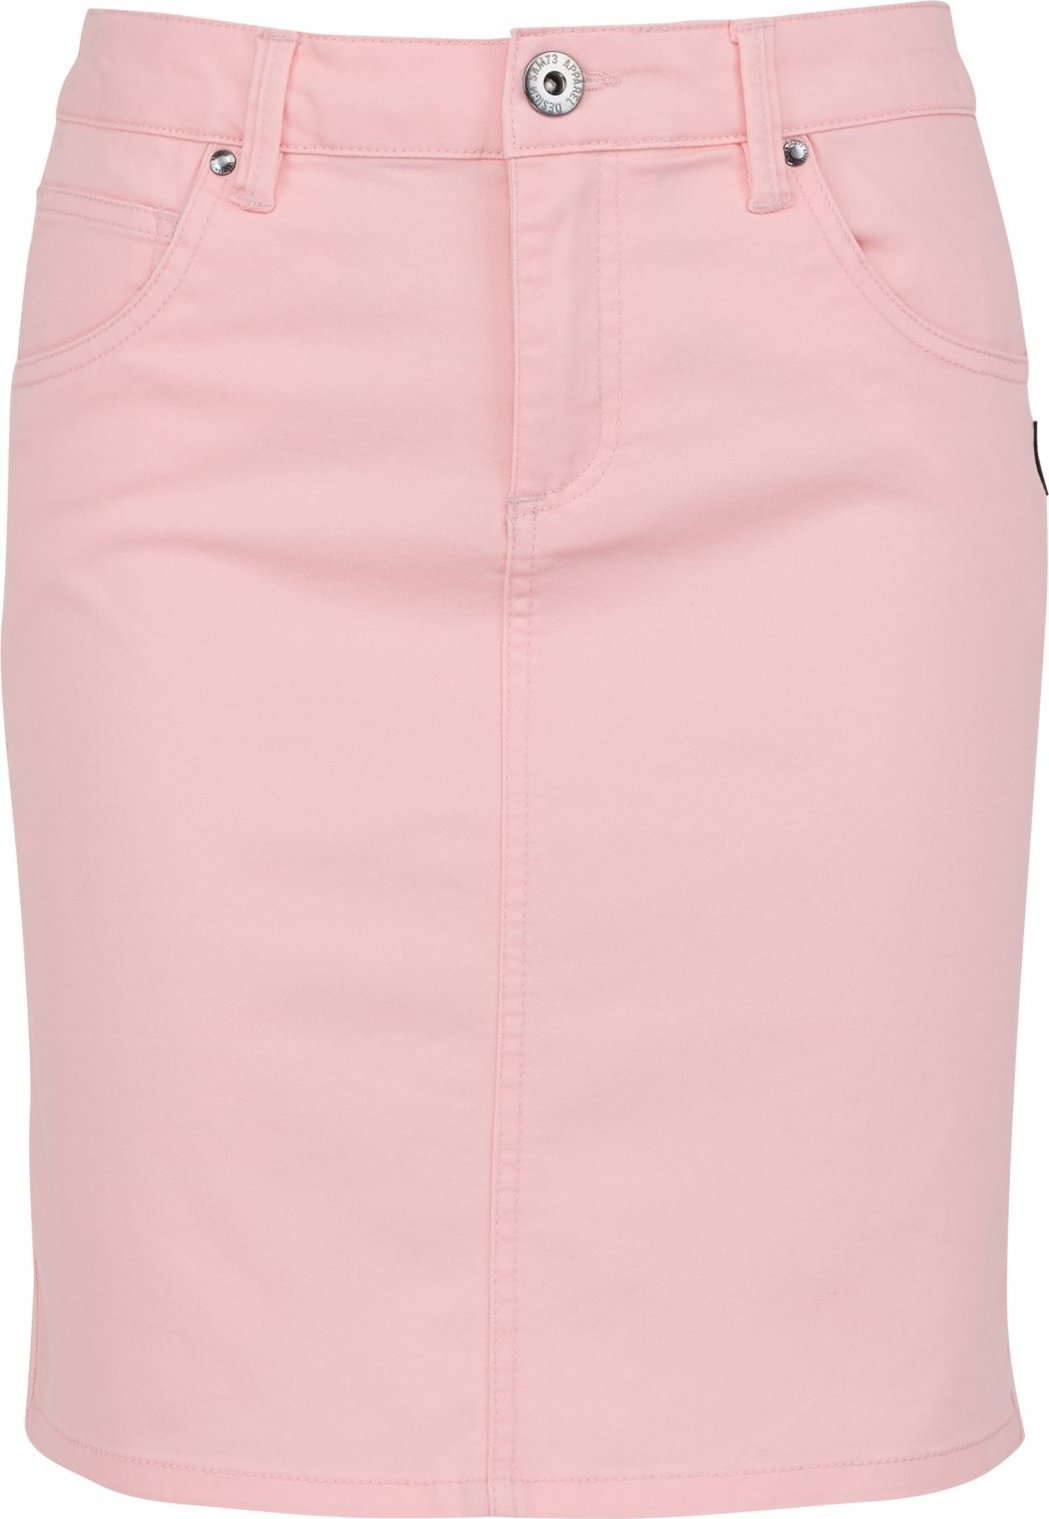 Dámská sukně SAM 73 Belén růžová Velikost: XL